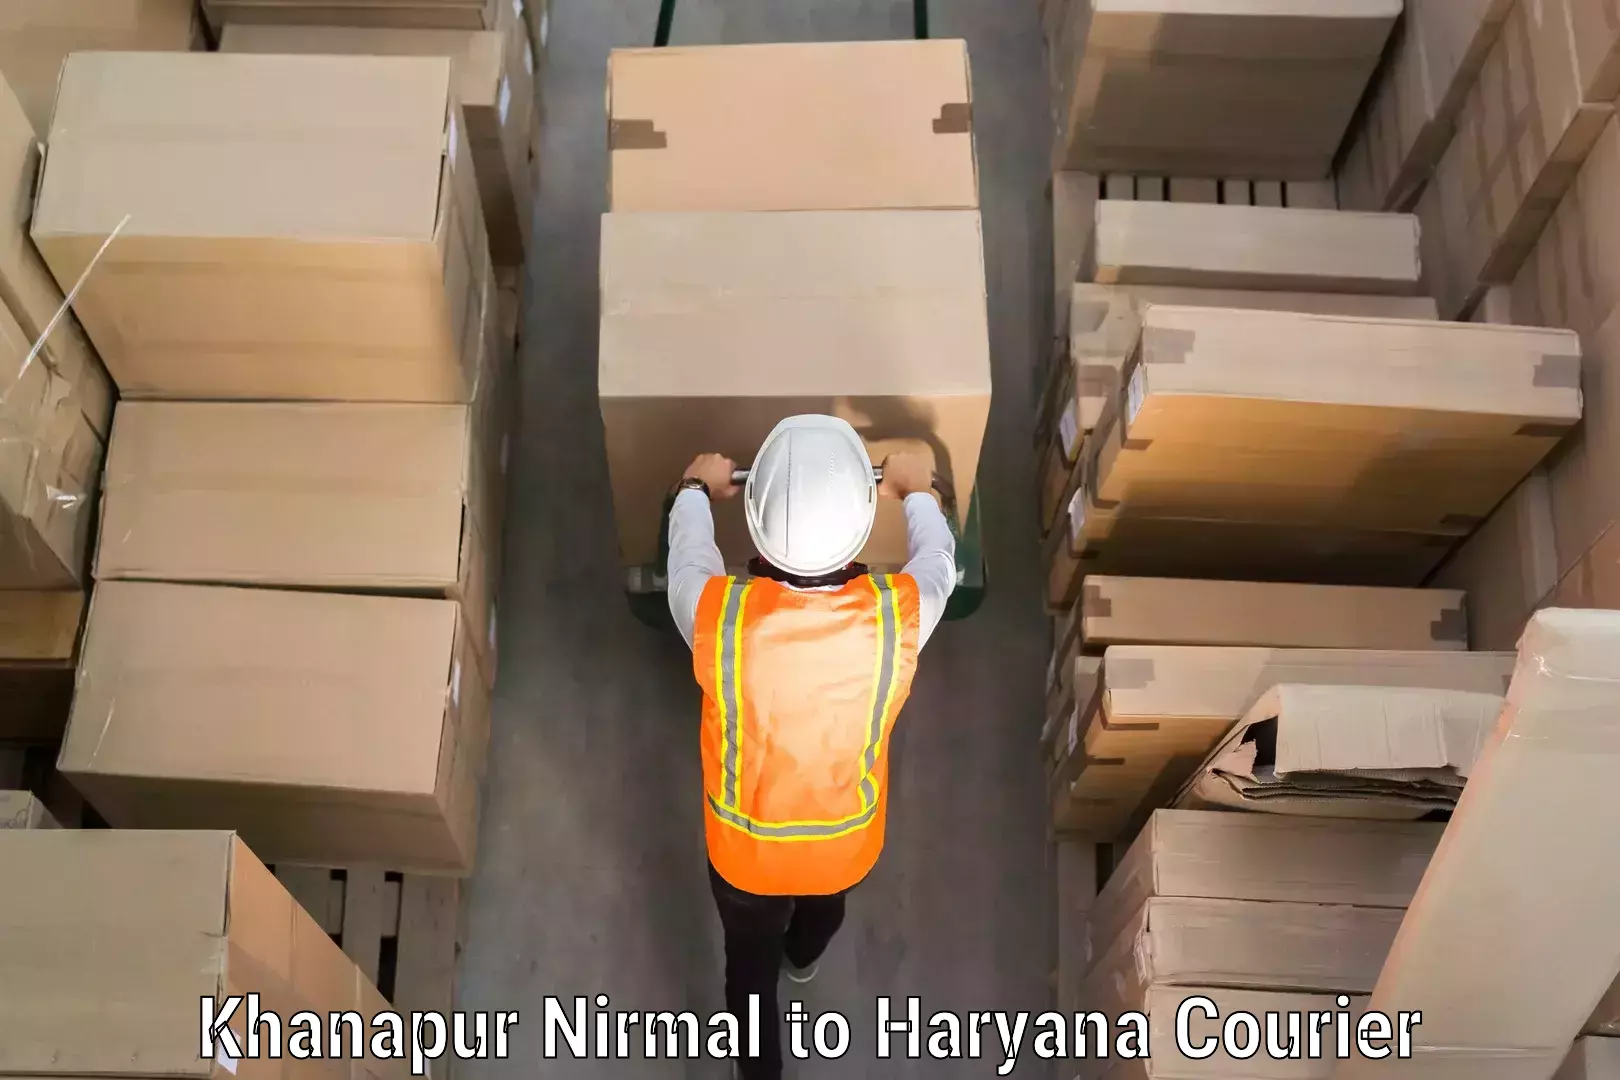 Baggage courier solutions Khanapur Nirmal to Julana